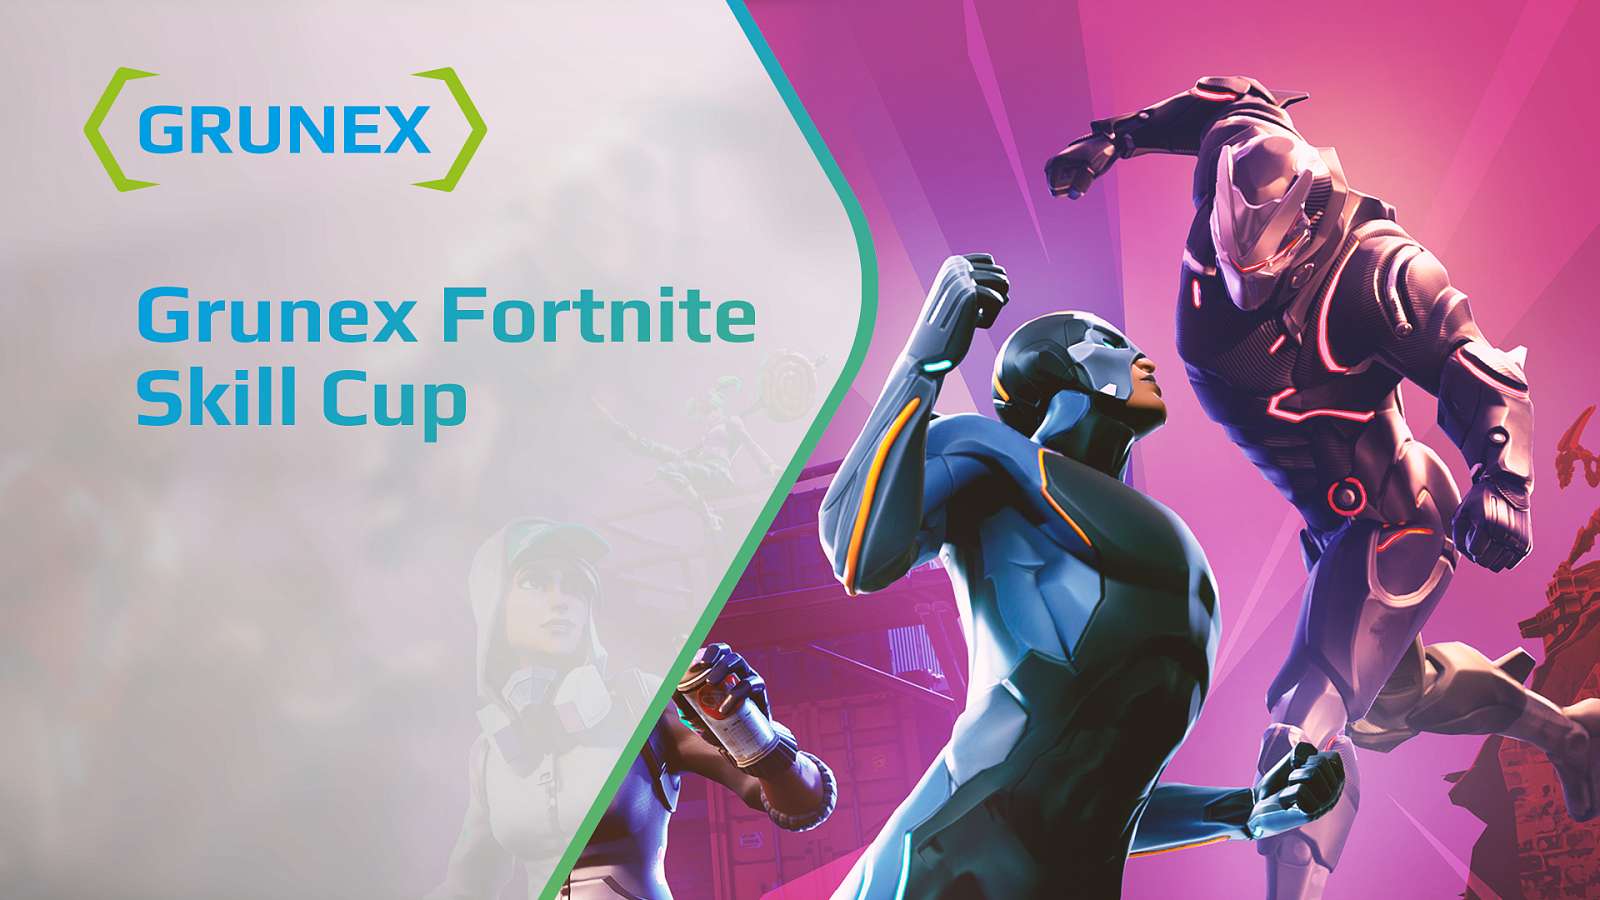 Přichází Grunex Fortnite Skill Cup v režimu všichni proti všem